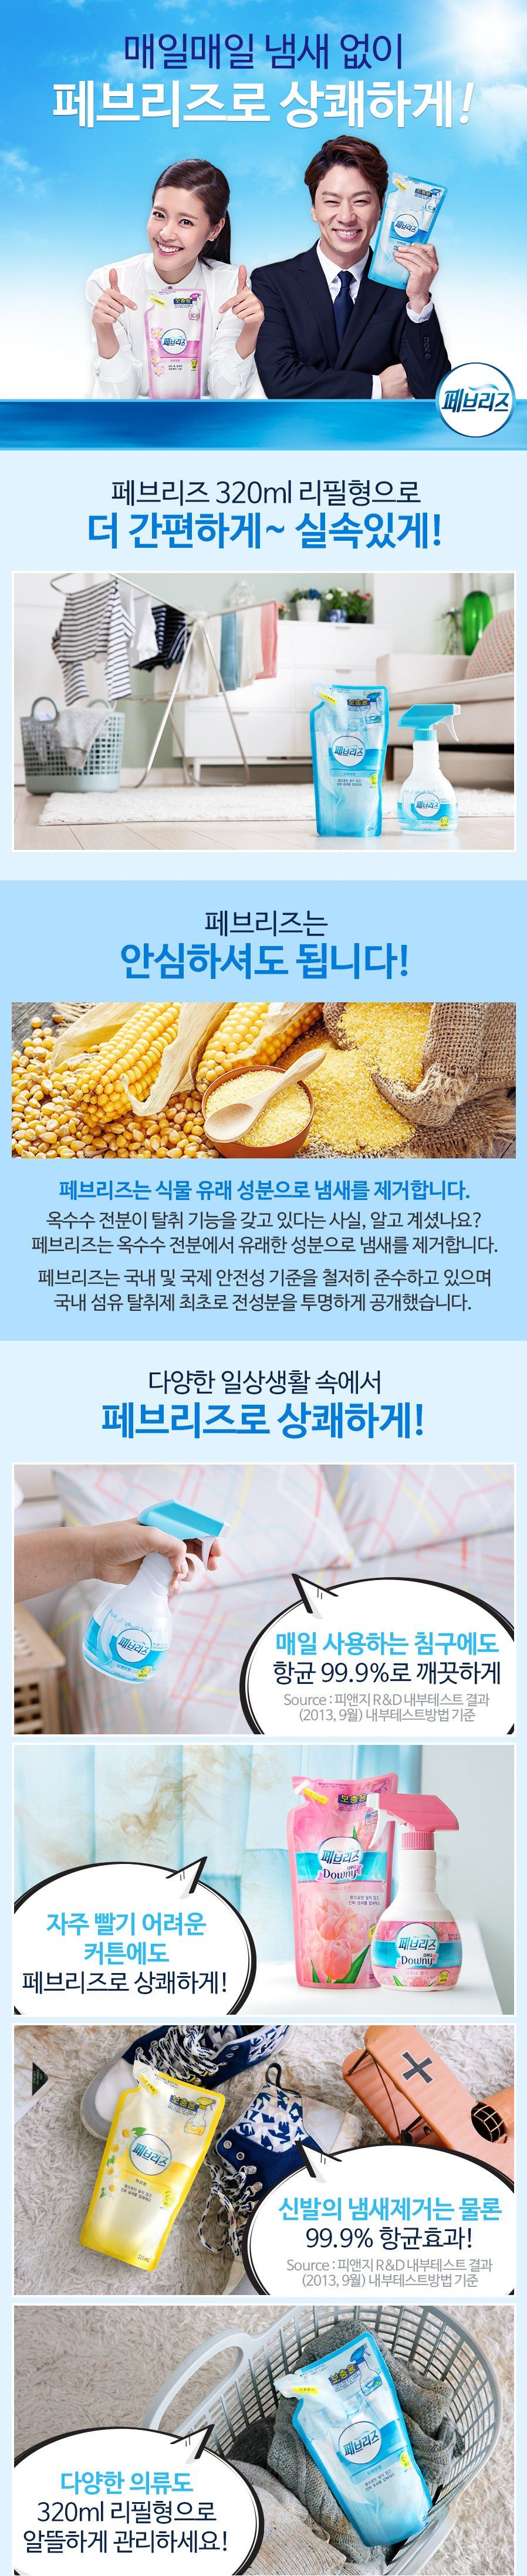 韓國食品-[P&G] 清新香氣噴霧補充劑[爽快] 320ml